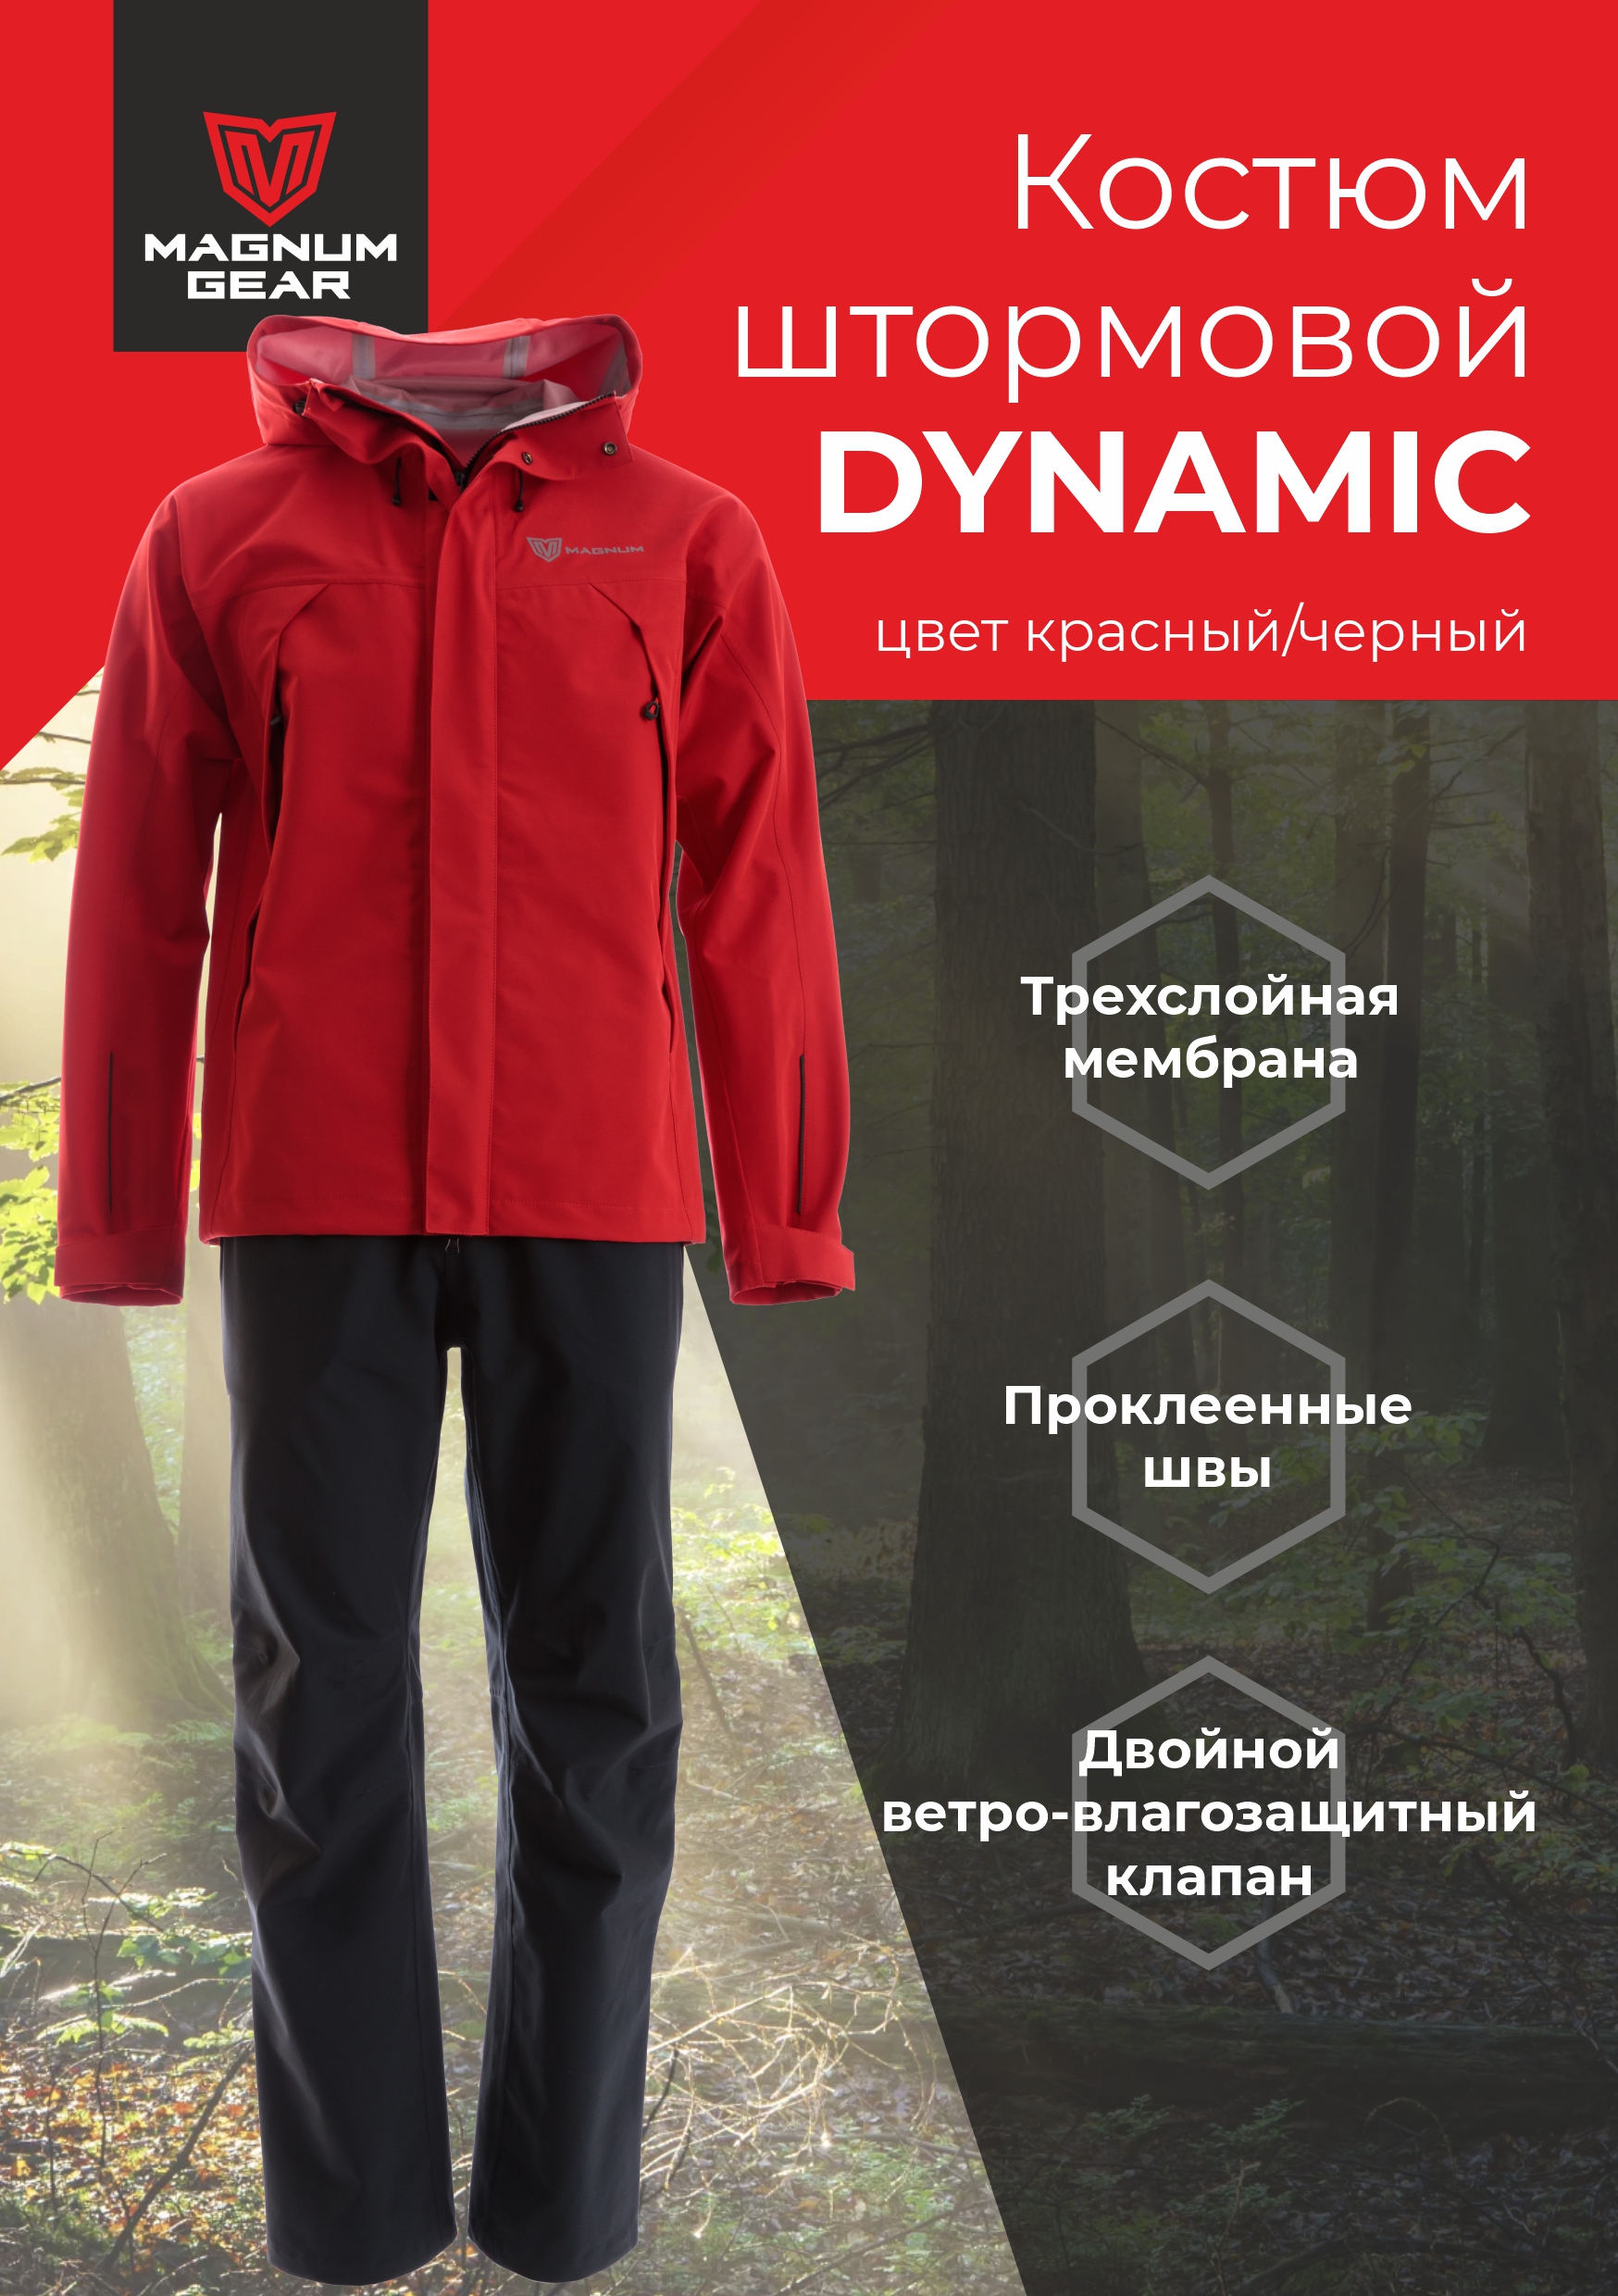 Костюм мужской Magnum Gear DYNAMIC, красный/черный, размер М, рост 170-176